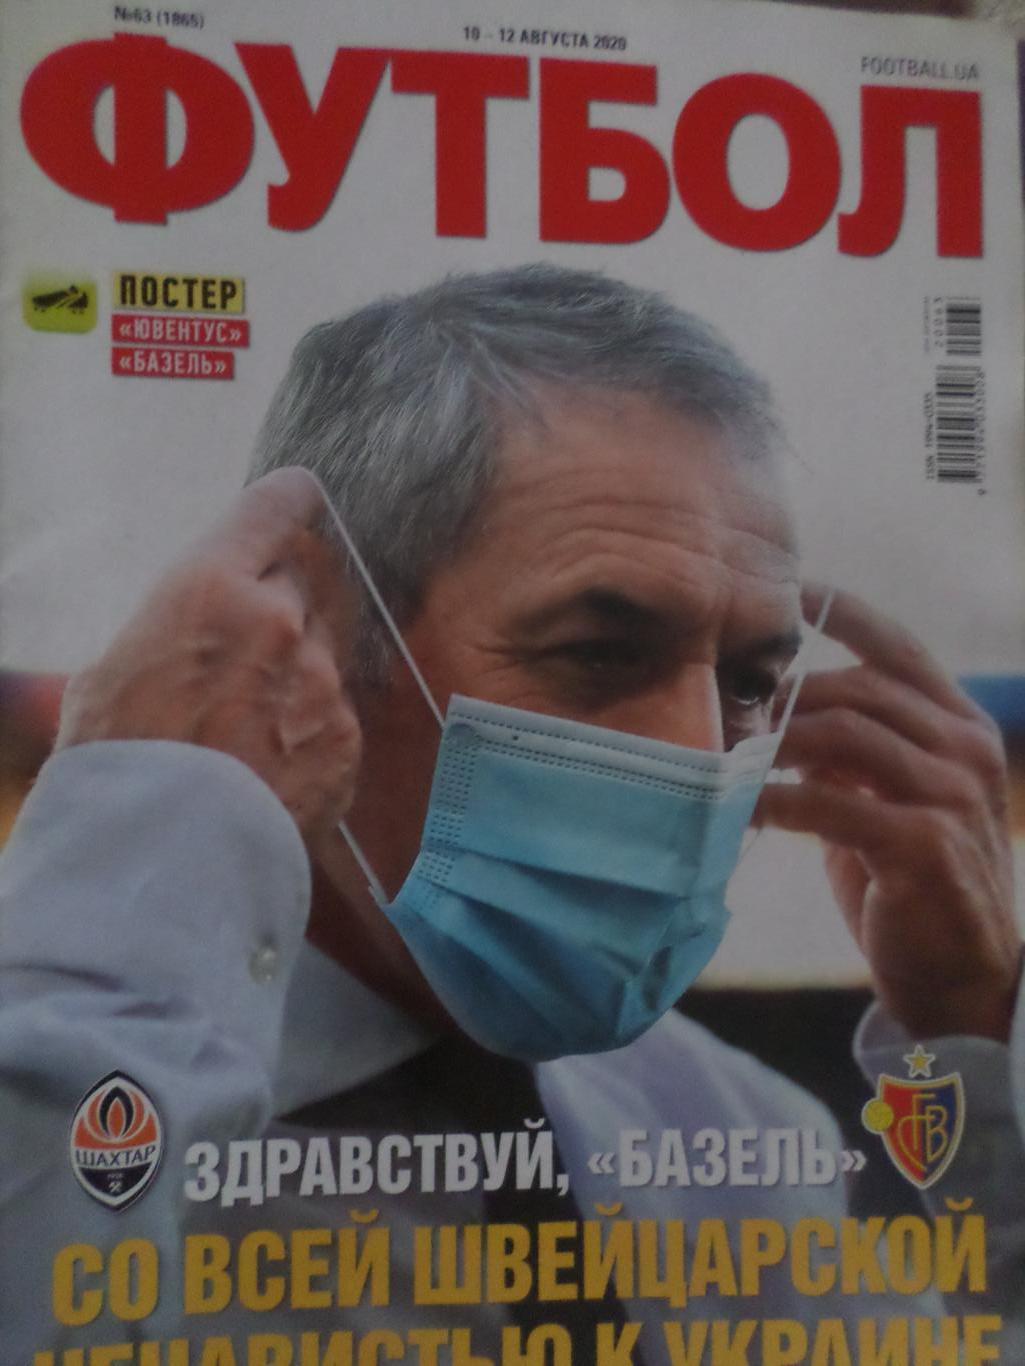 Еженедельник Футбол, Киев, № 63 2020 год